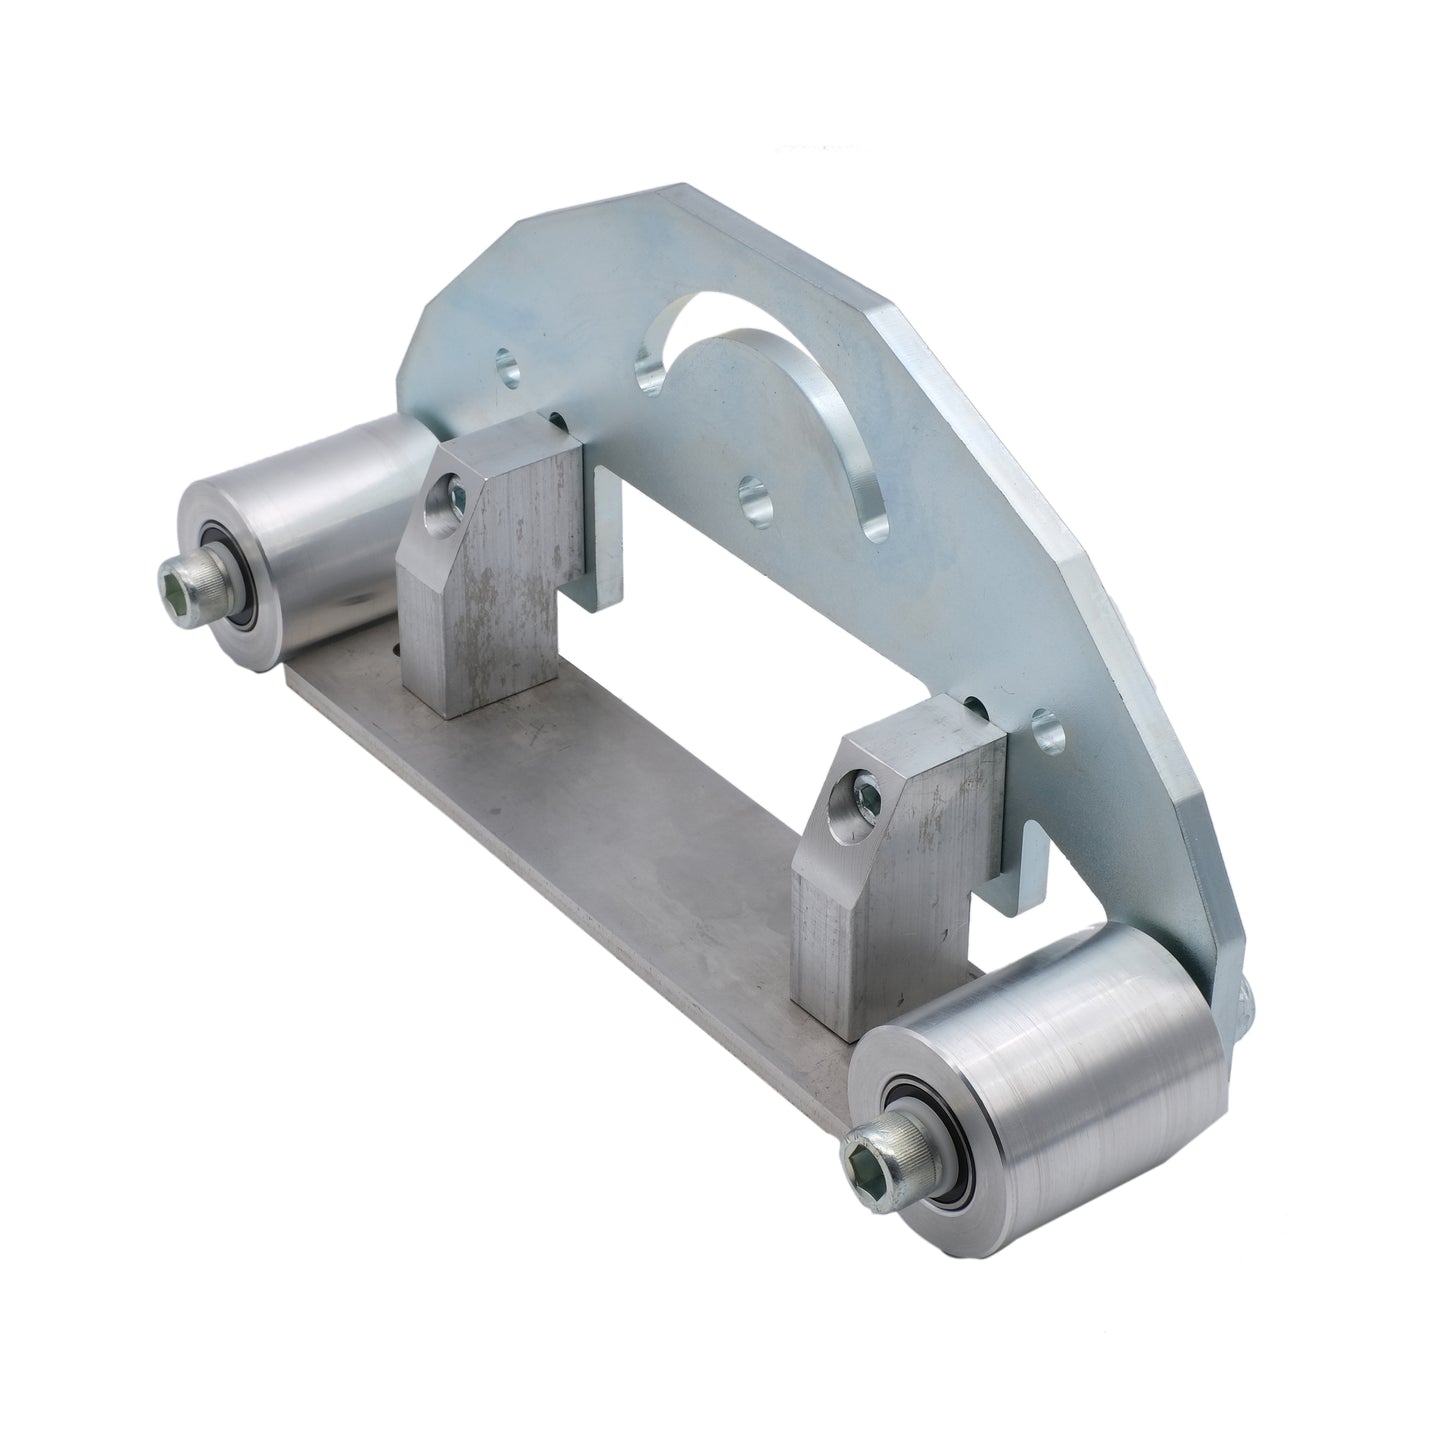 TR MAKER Belt Grinder D-Backing plate for 2x72" knife making grinder with wheels